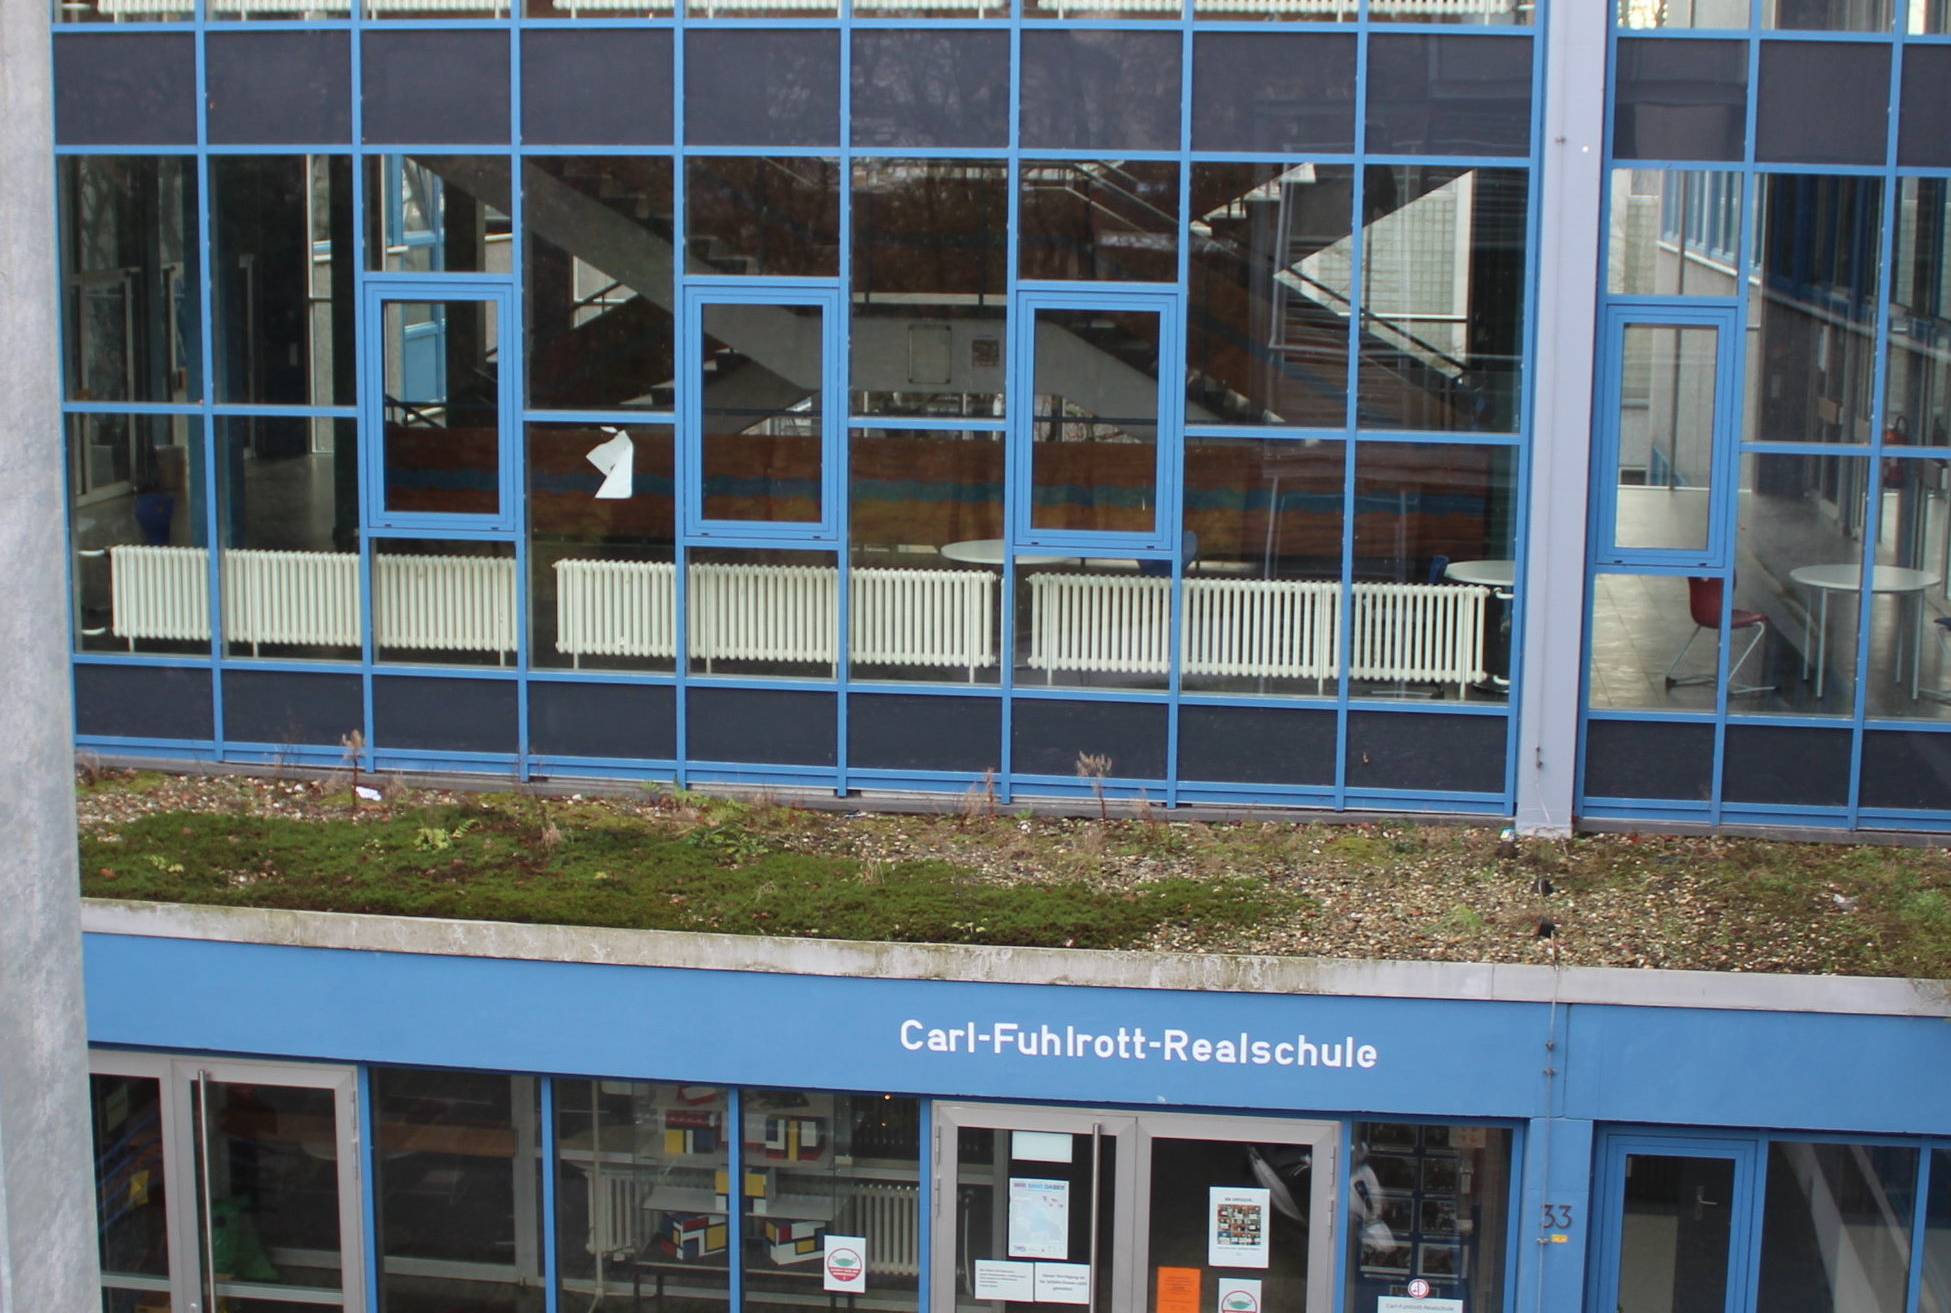  Die Carl-Fuhlrott-Realschule soll nach dem Willen des Rates einer Gesamtschule weichen. 